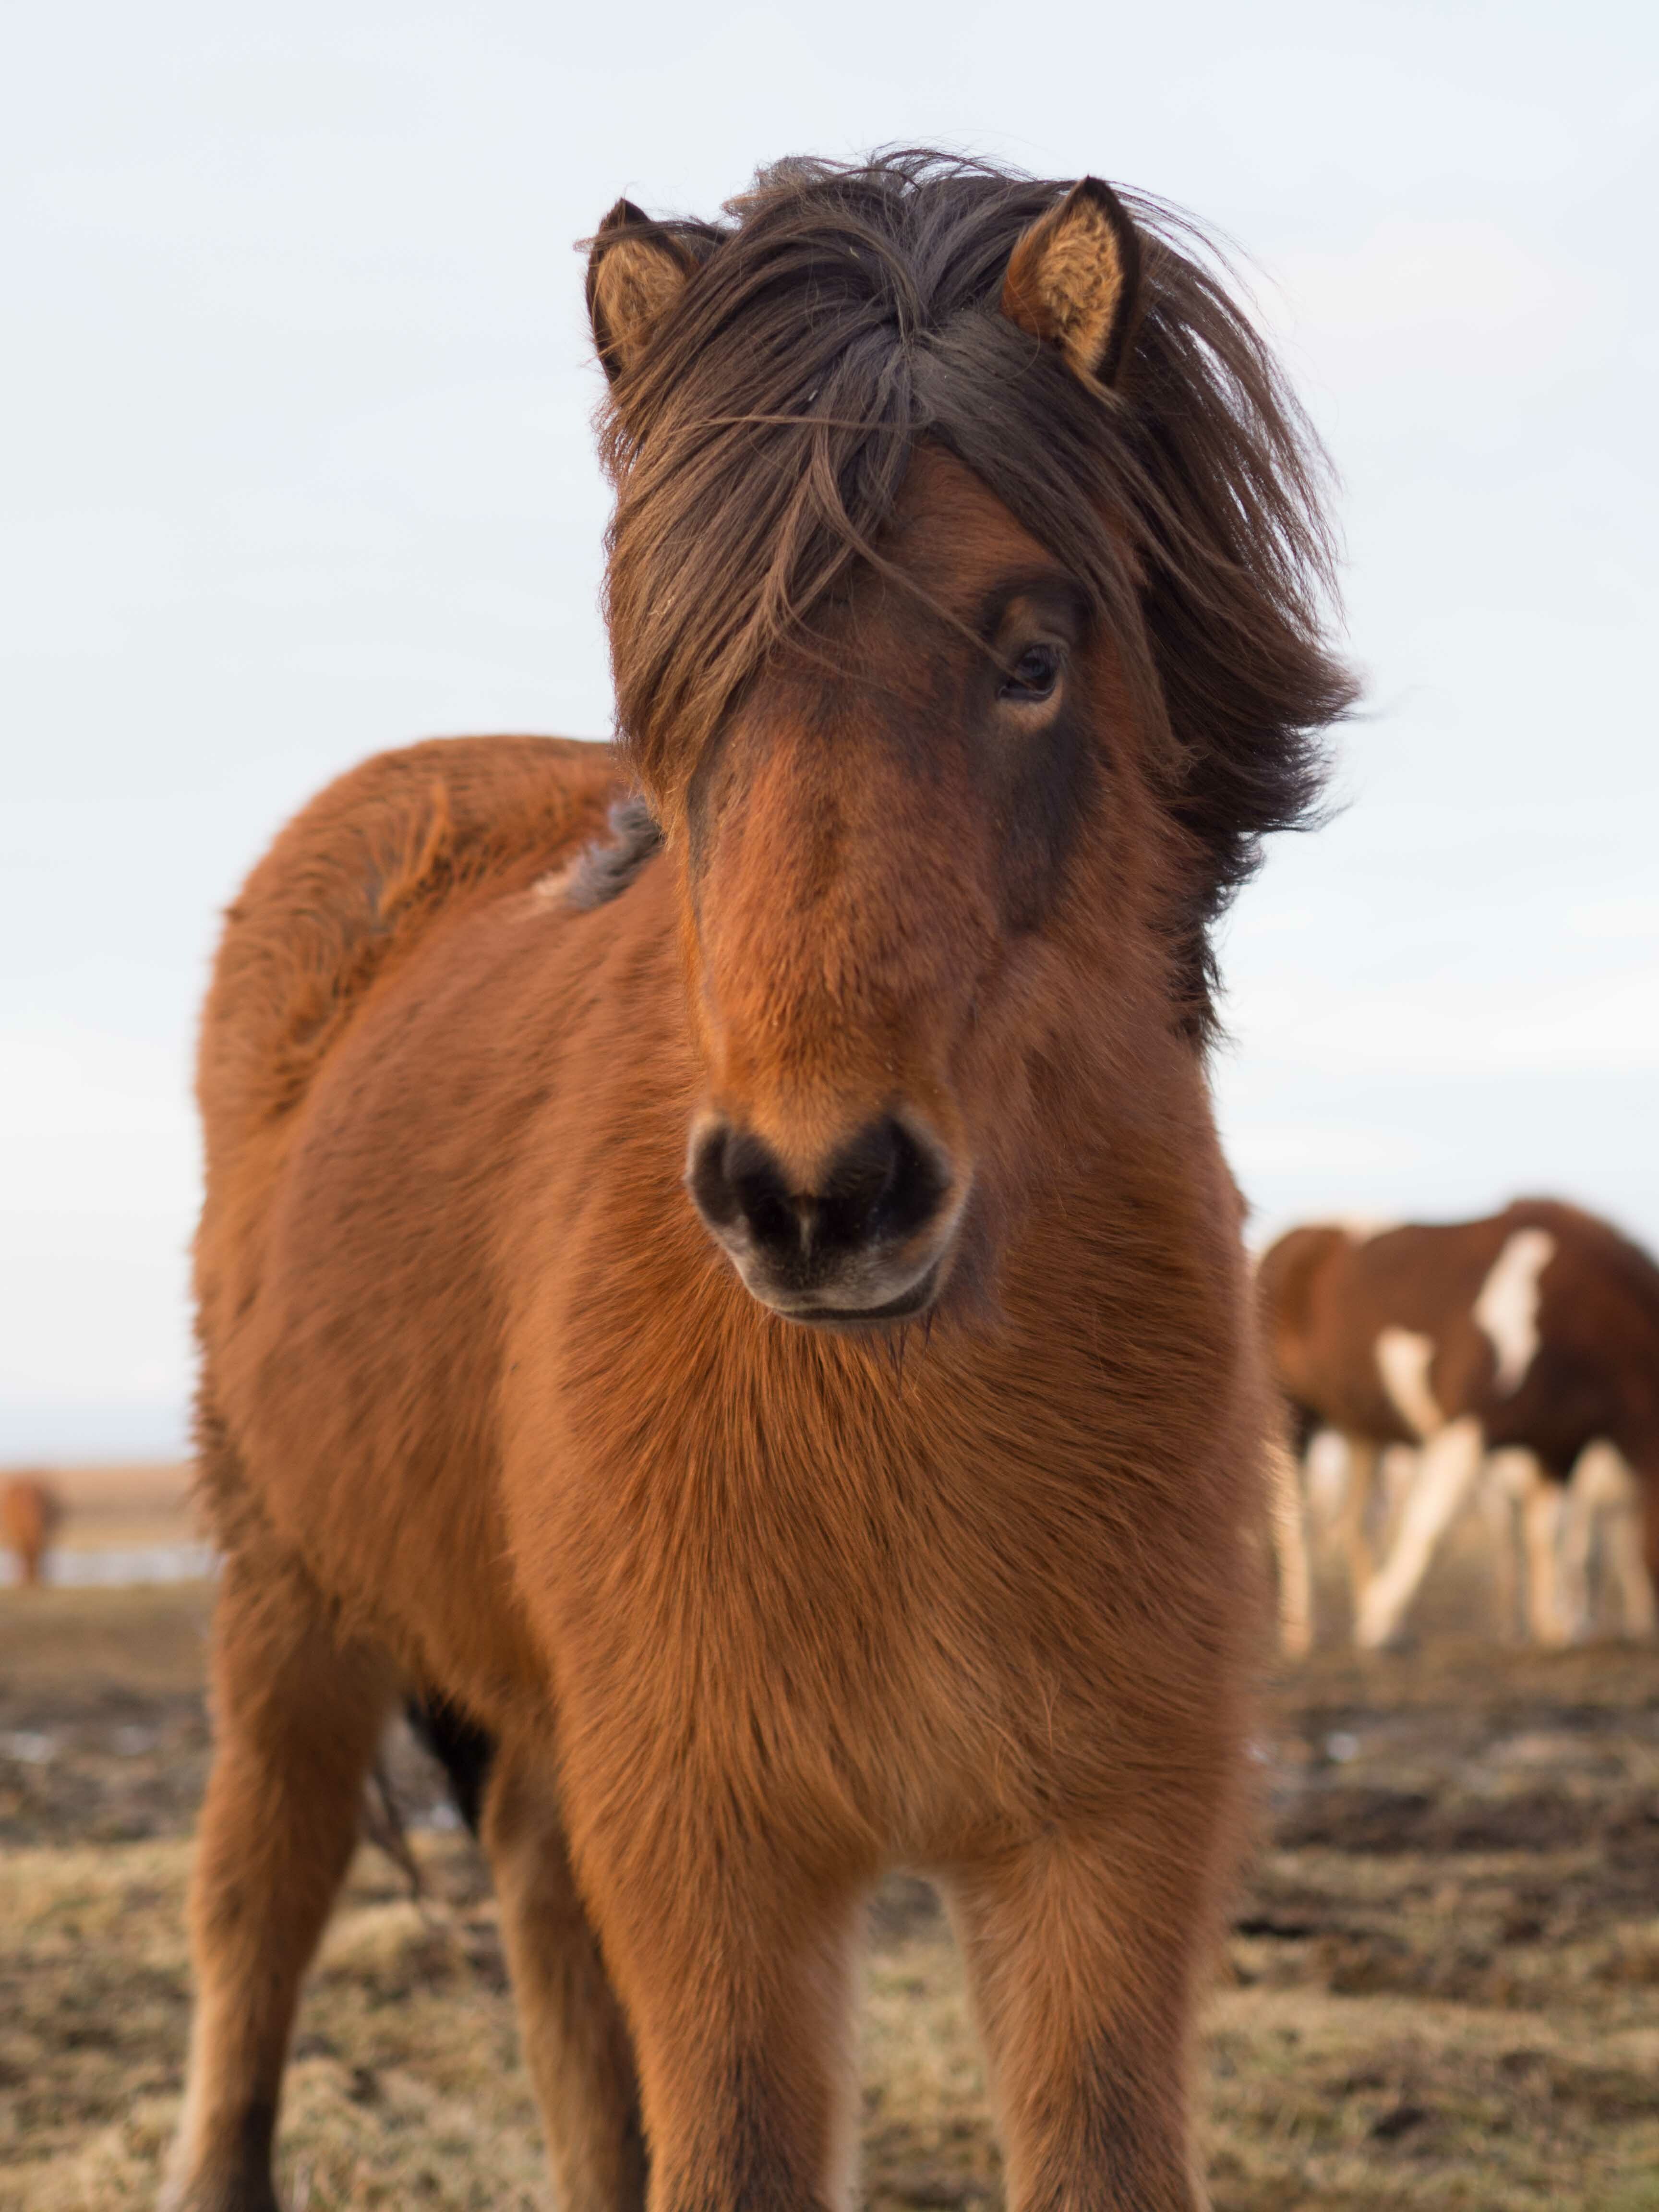 Ce cheval a de beaux cheveux